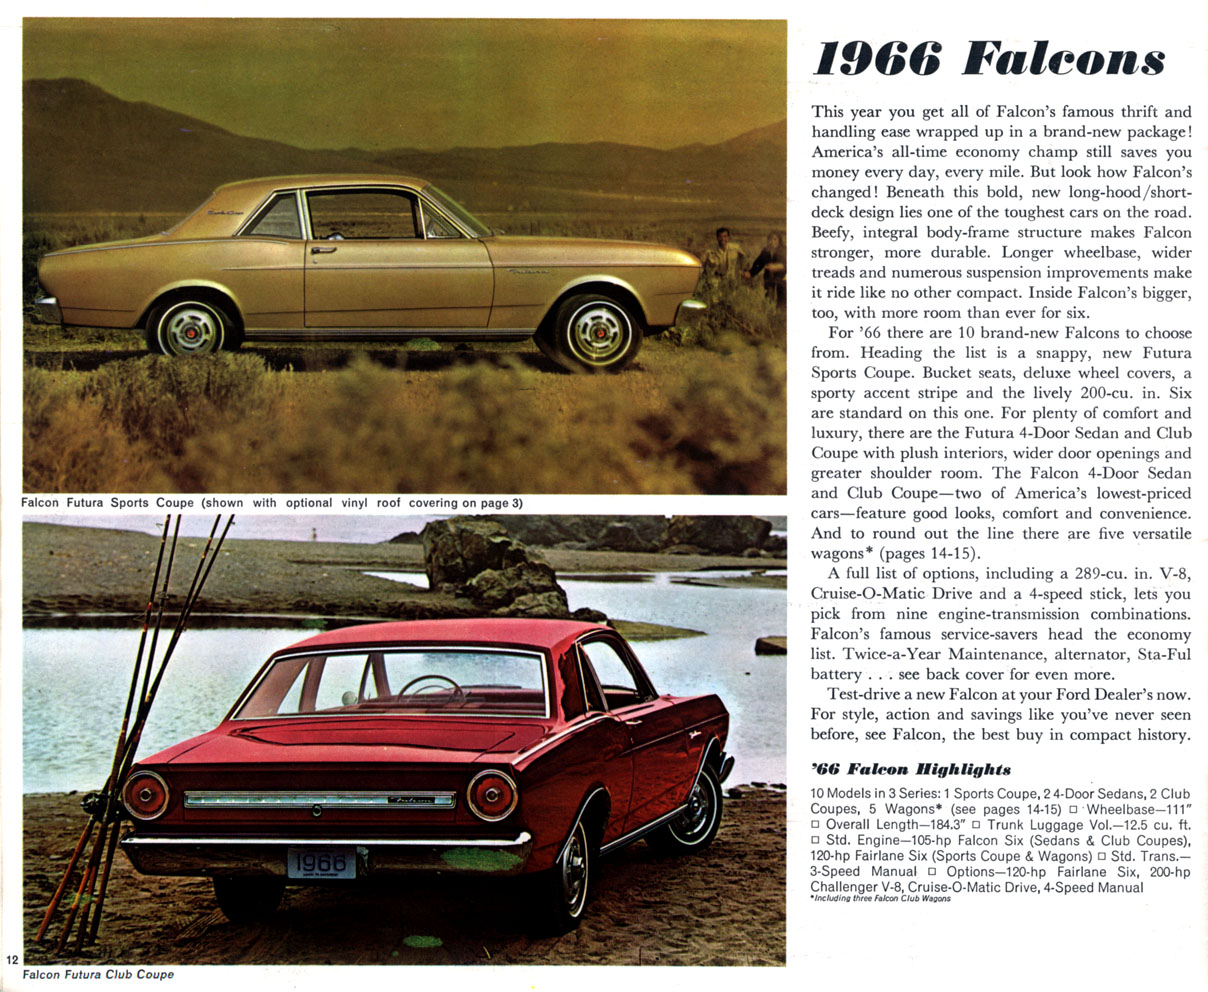 1966 Ford Full Line-12